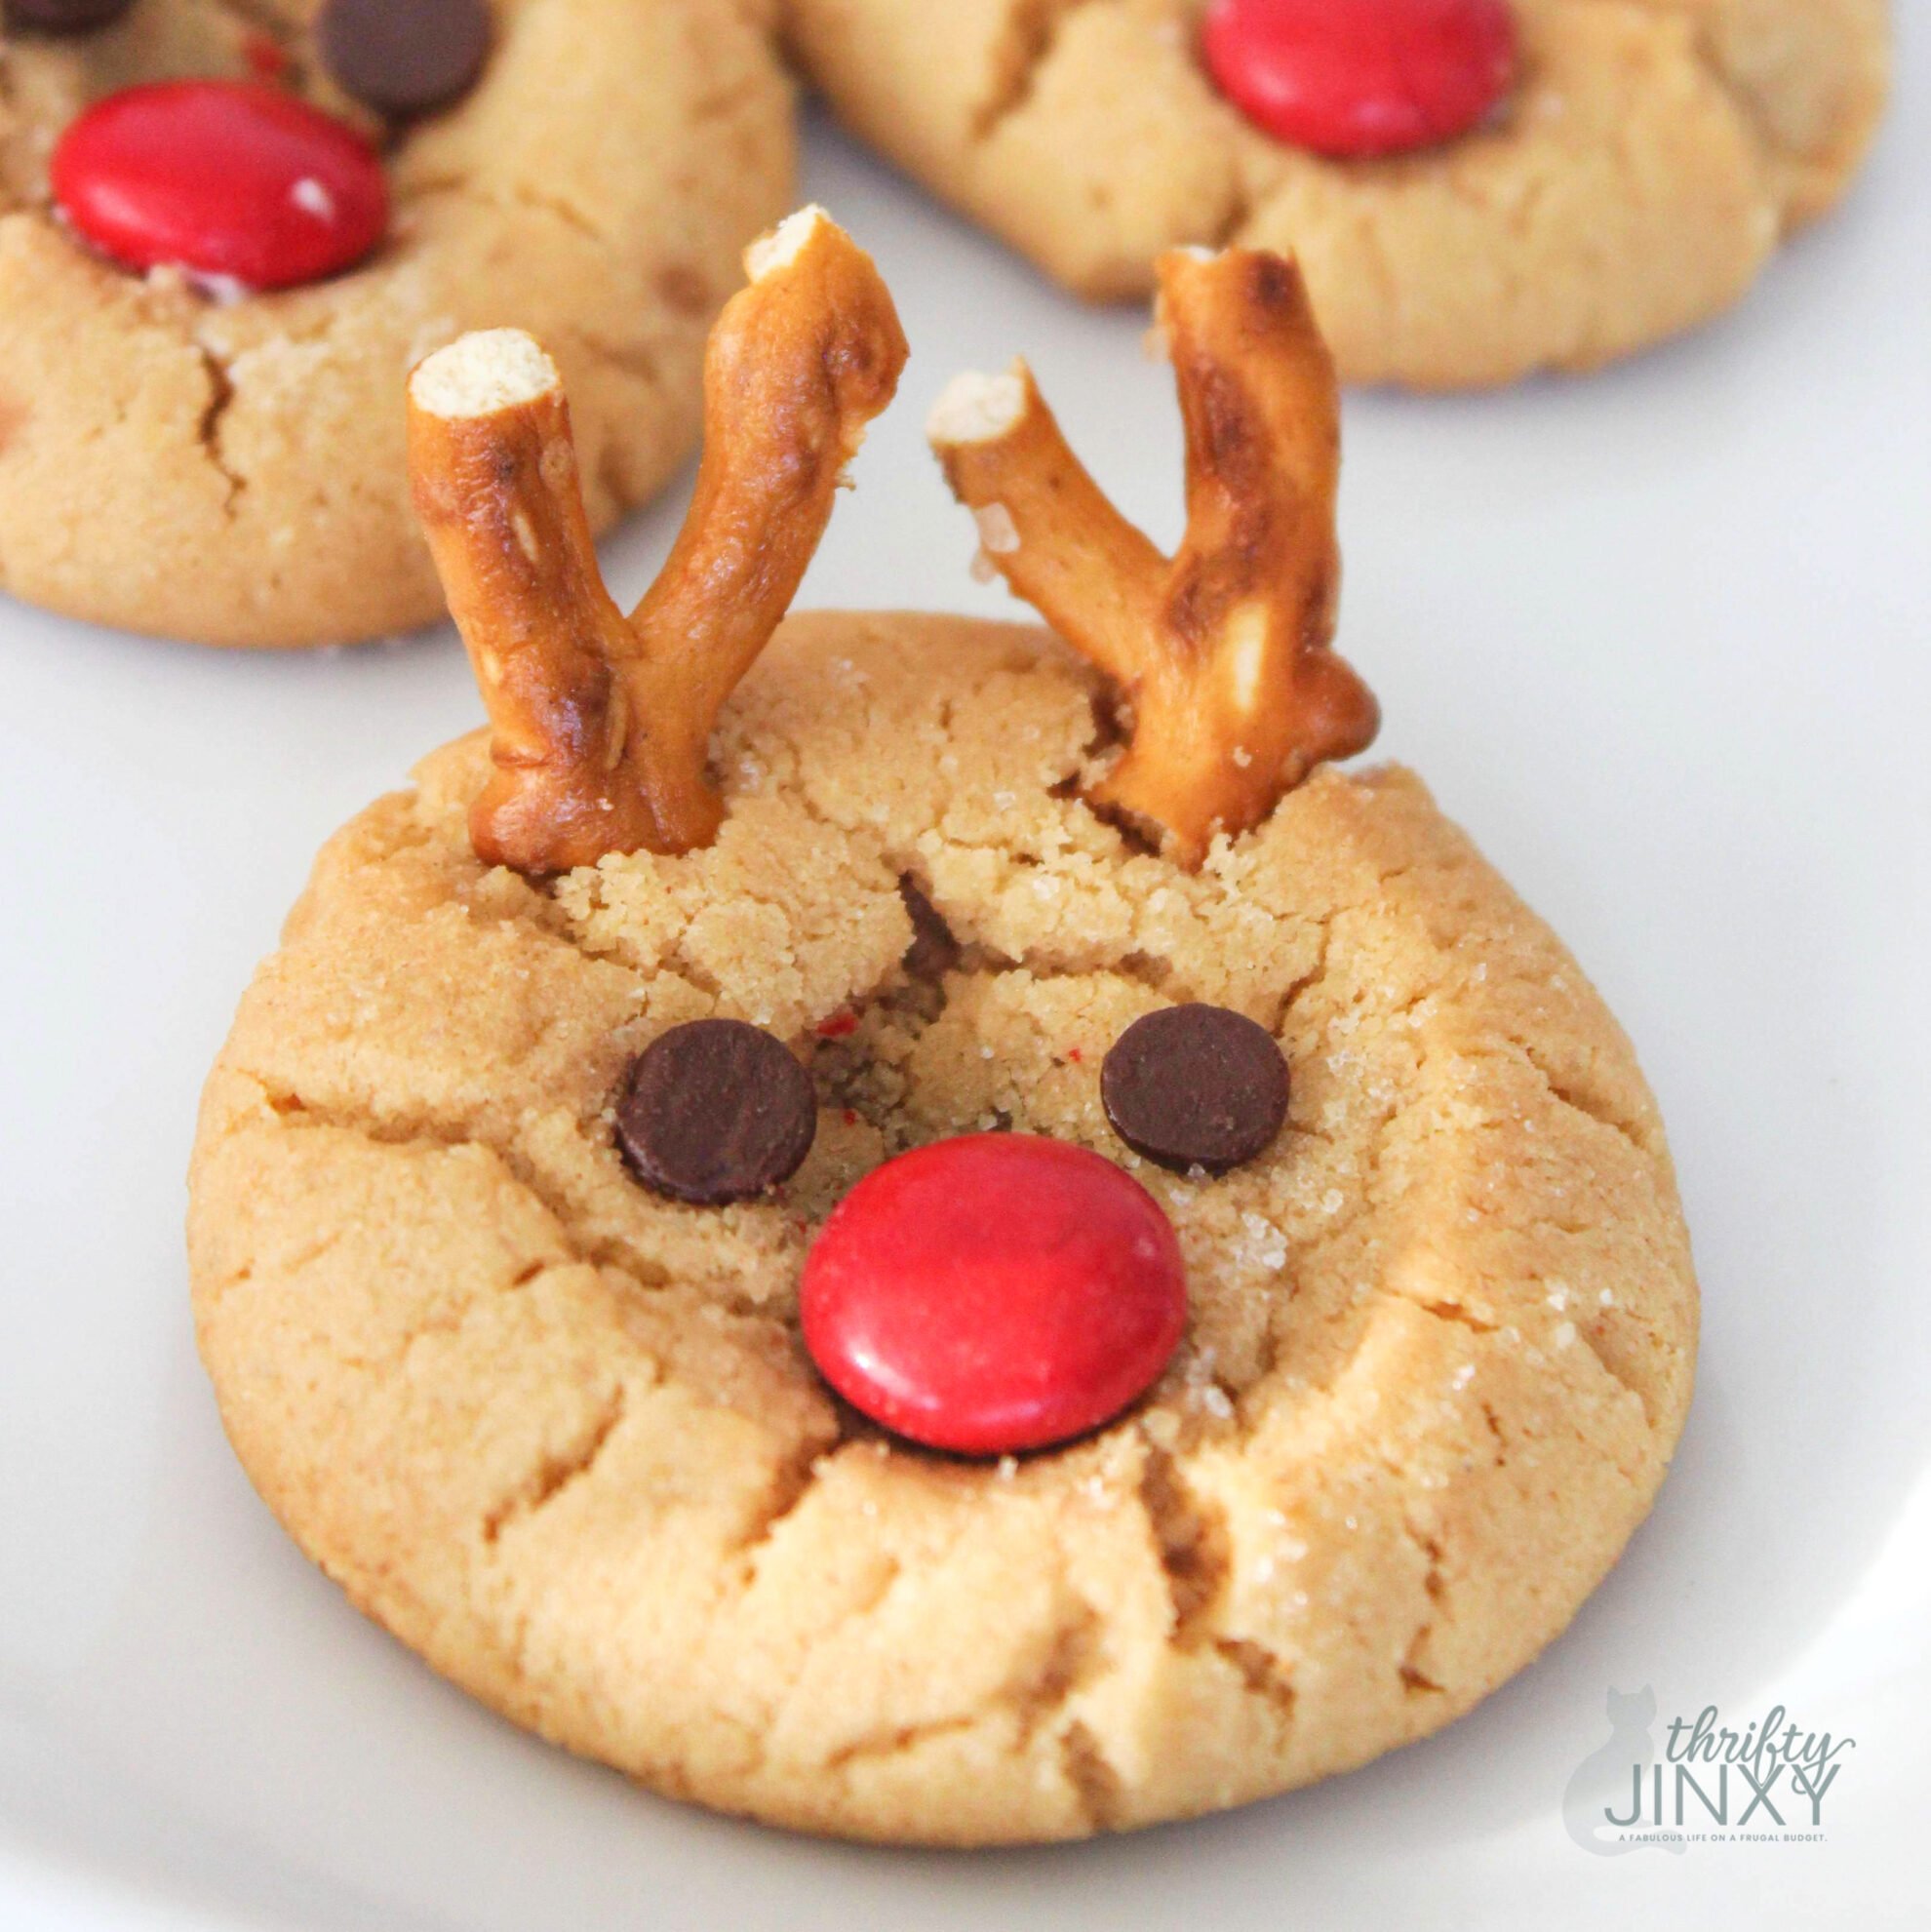 https://thriftyjinxy.com/wp-content/uploads/2015/12/Rudolph-Peanut-Butter-Cookies.jpg